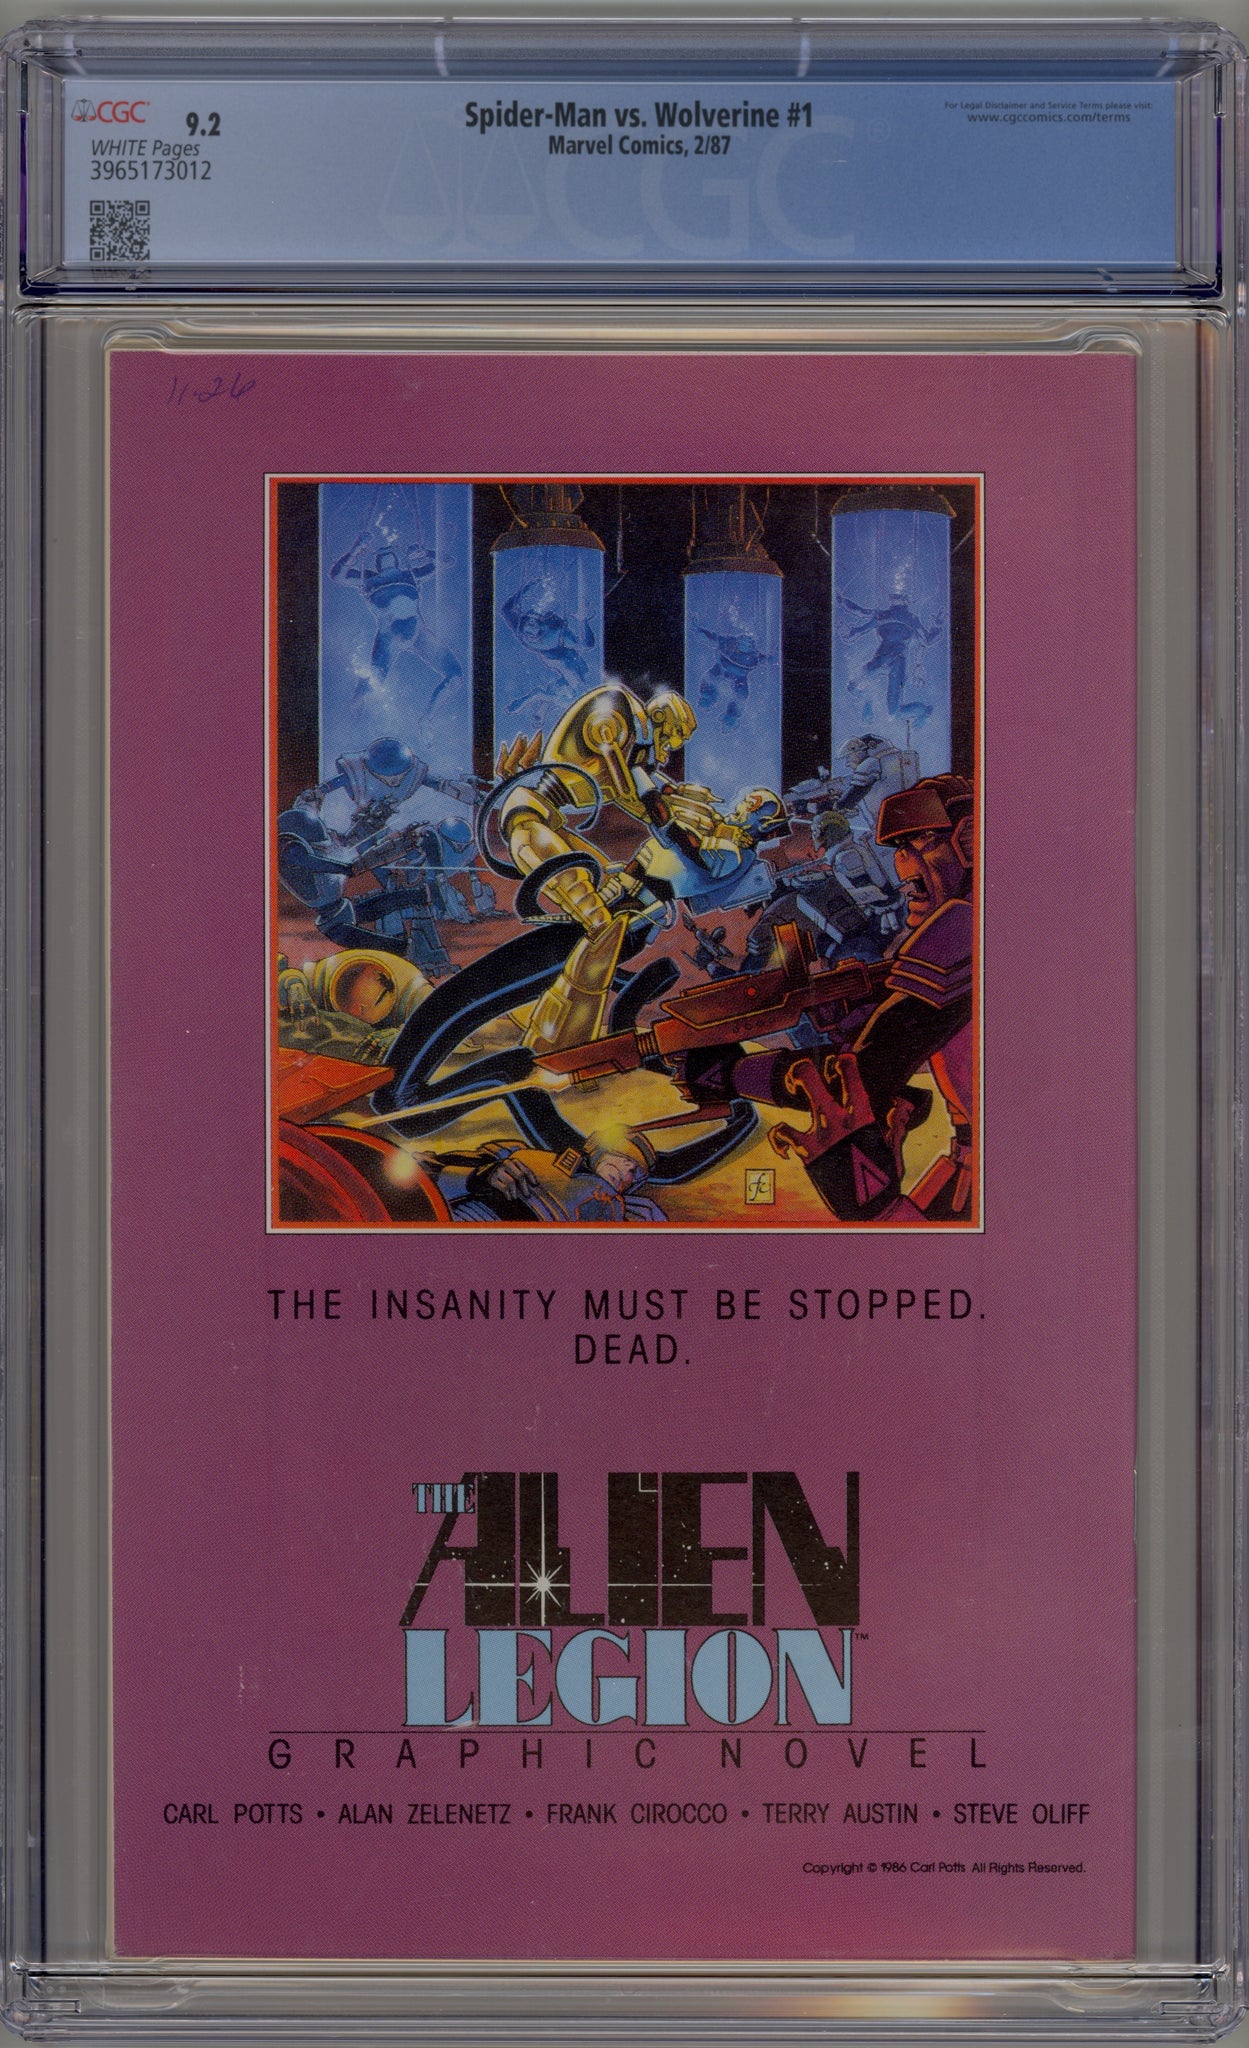 Spider-Man vs. Wolverine #1 (1987) newsstand edition